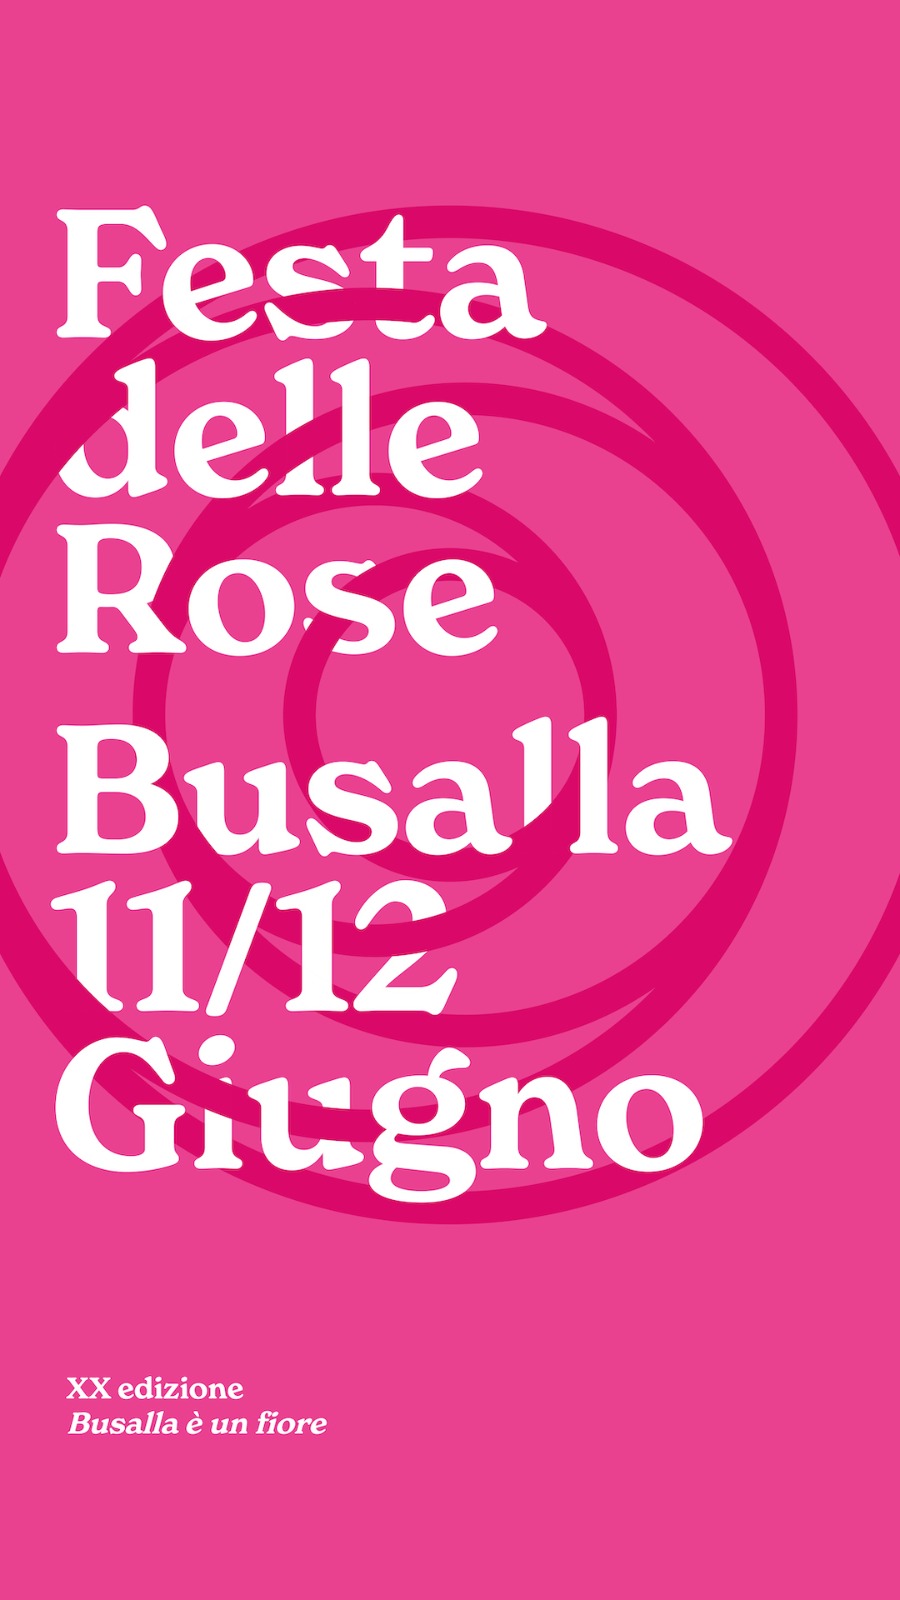 Il Parco dell'Antola alla Festa delle Rose di Busalla - 11/12 giugno 2022